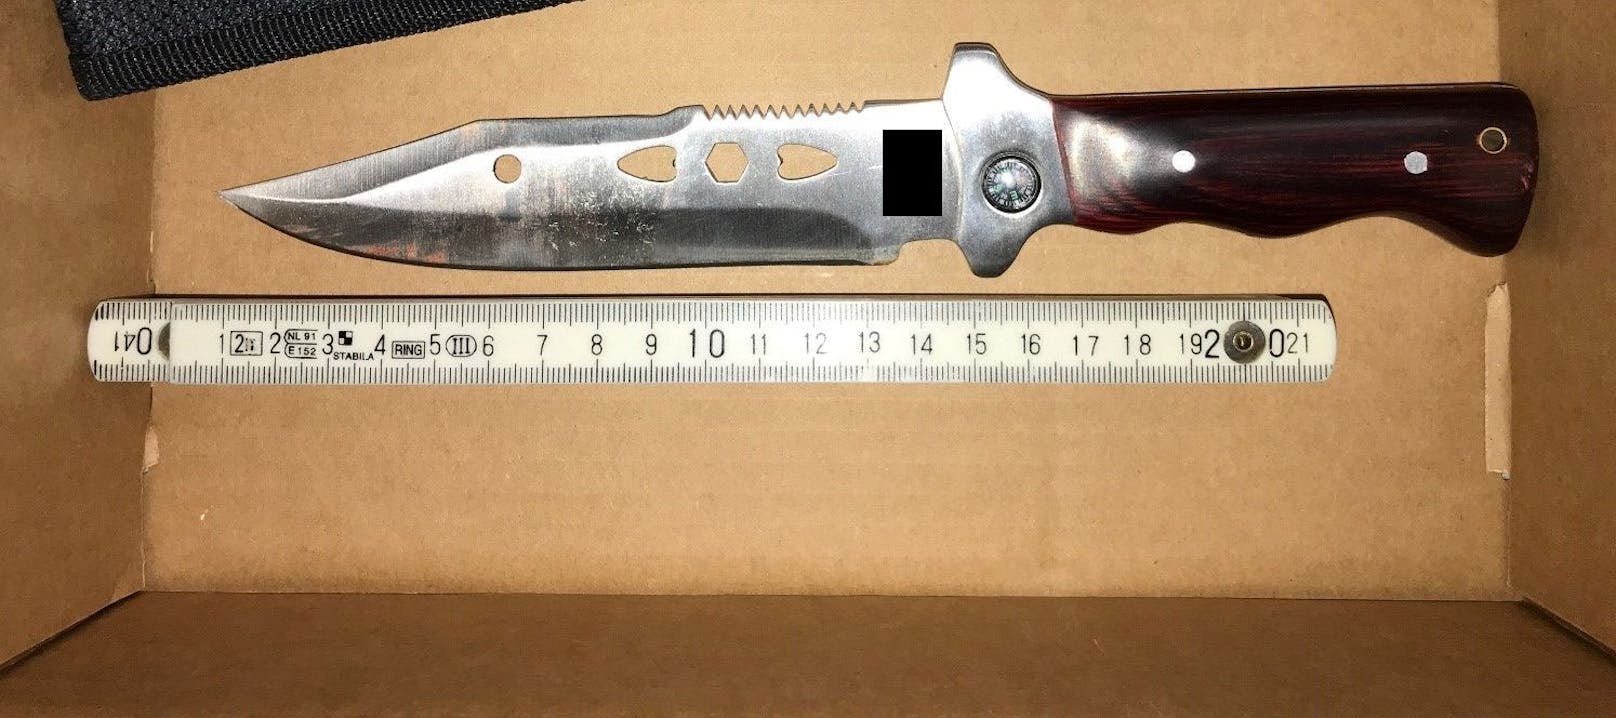 Das Messer wurde von der Polizei sichergestellt